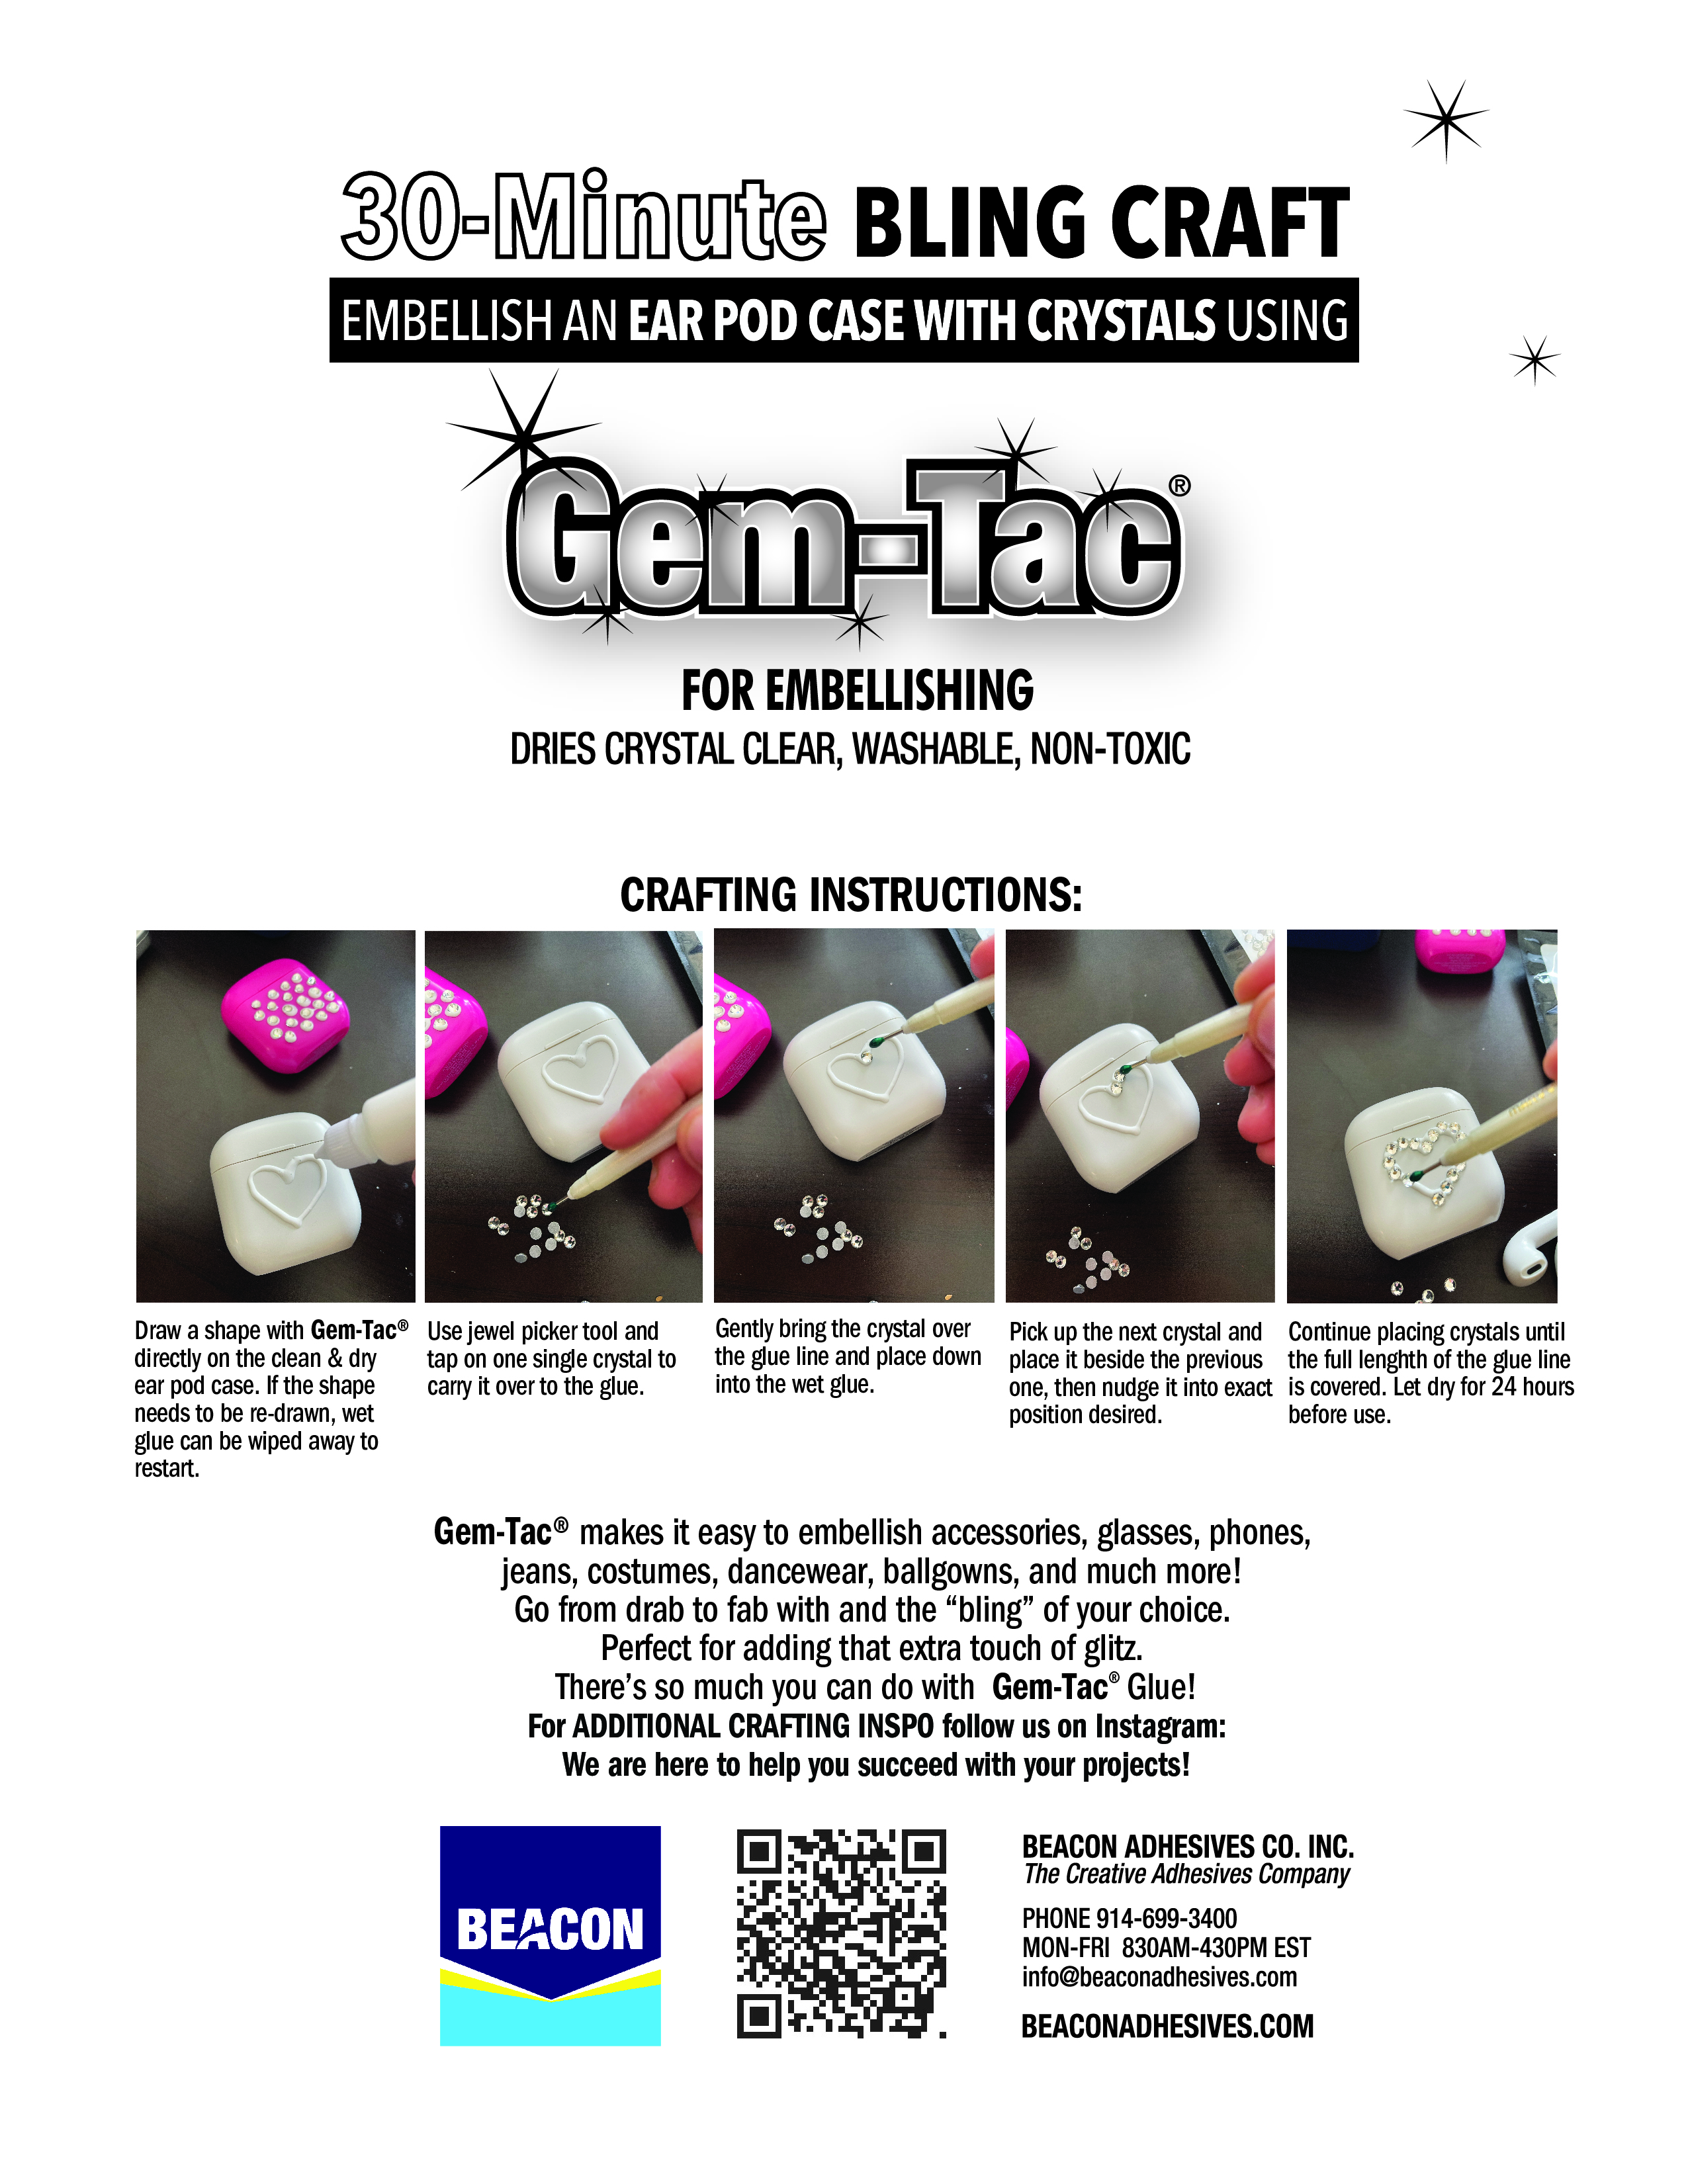 Beacon Gem-Tac Permanent Glue - 2 oz.